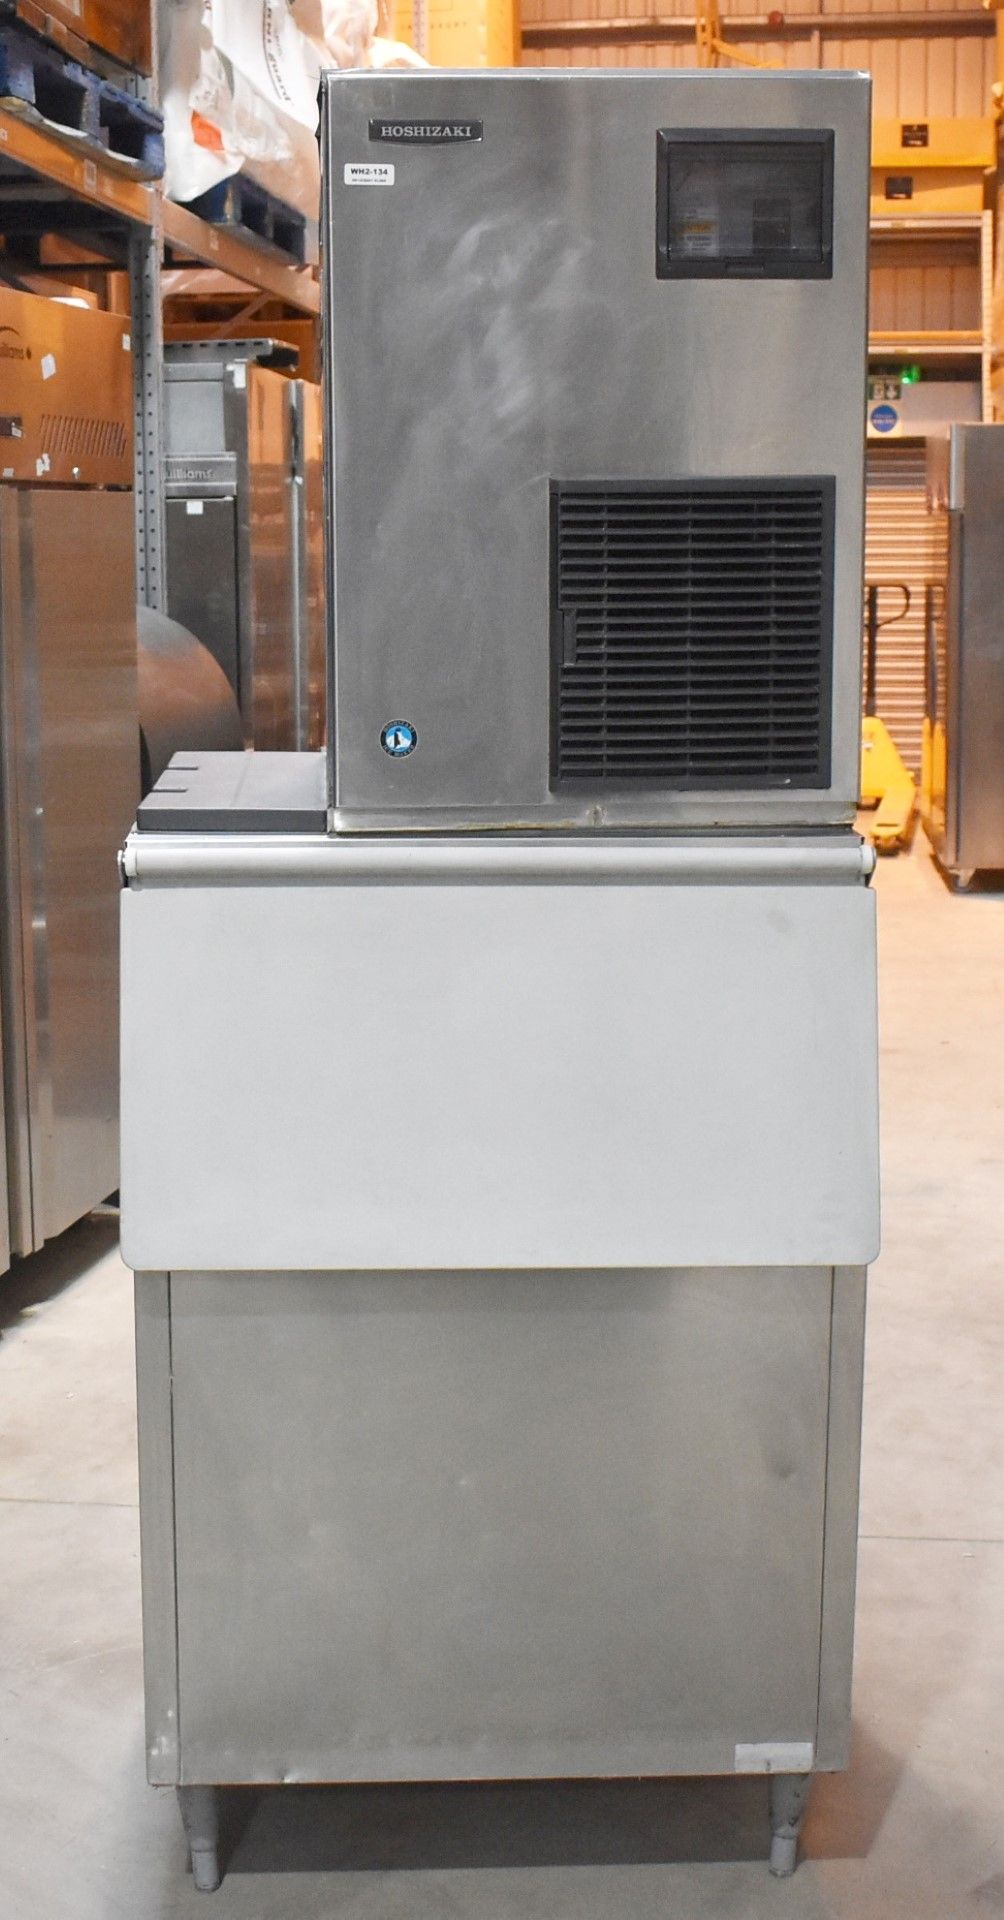 1 x Hoshizaki FM-480AFE Ice Machine - Produces Upto 480kg of Ice Flakes Per Days - Includes Large